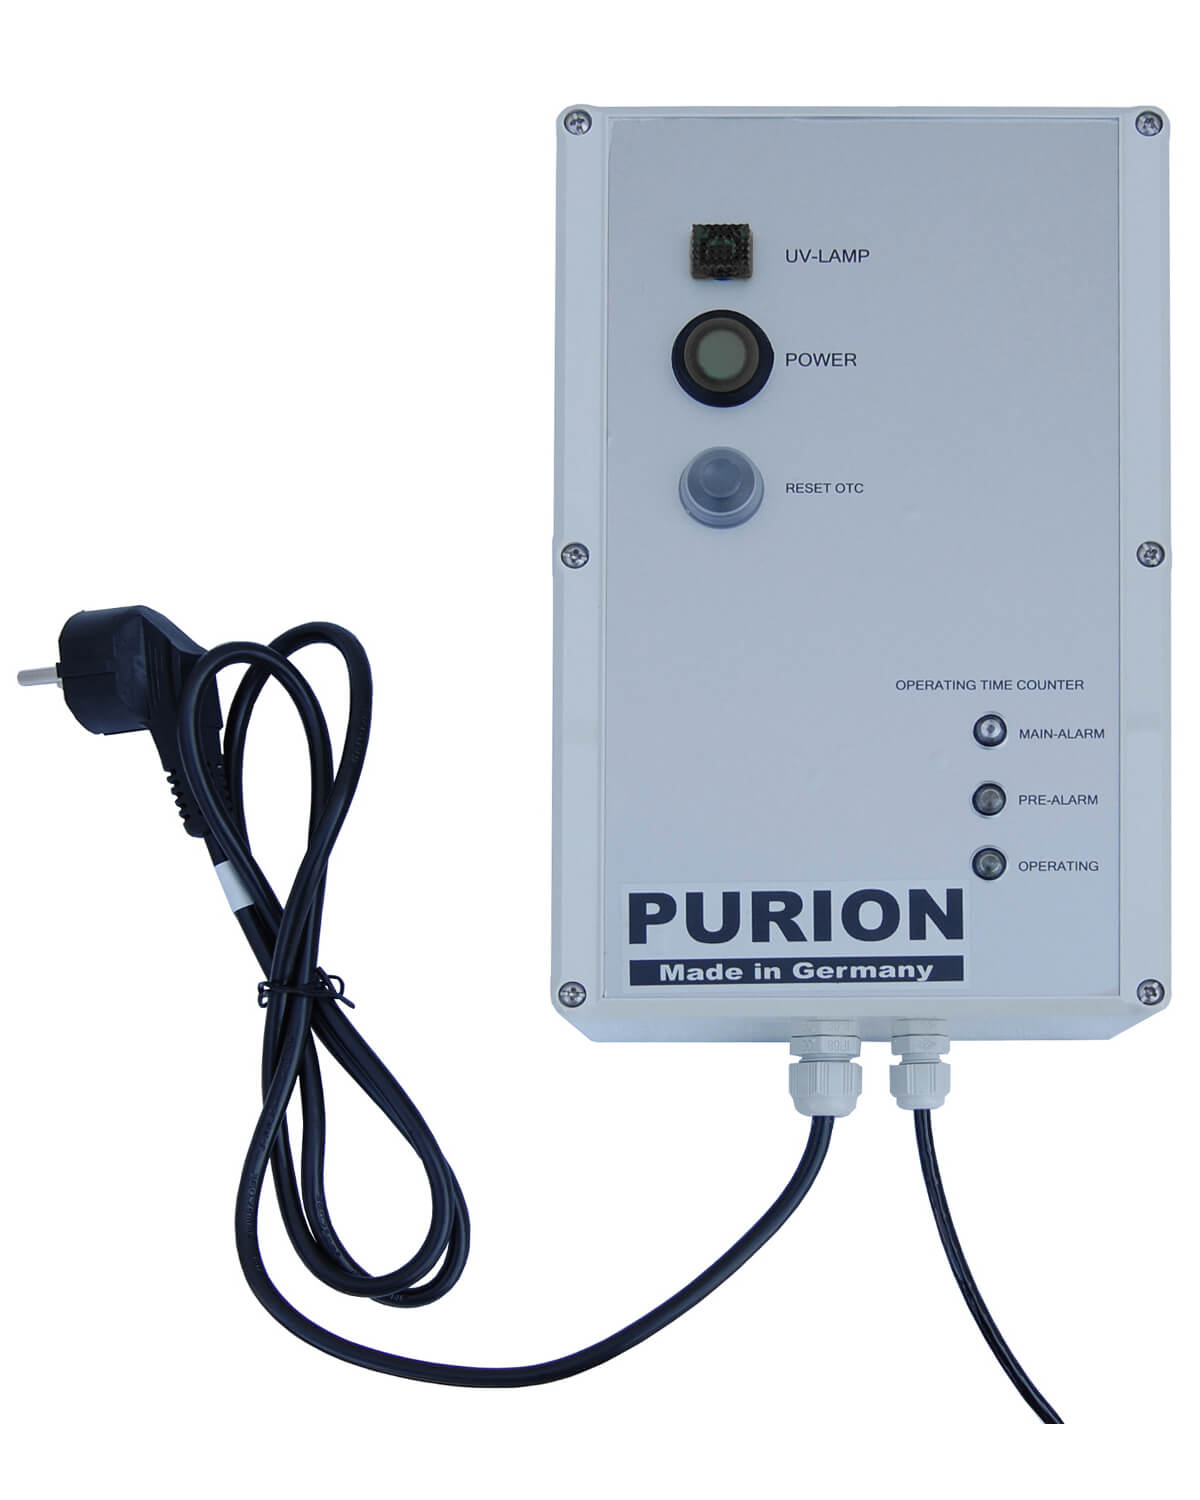 Das PURION 2501 PVC-U OTC Bundle der PURION GmbH nutzt das UV-C-Desinfektionsverfahrens, um eine hochmoderne Lösung für Salzwasserpools bereitzustellen. Mit seiner fortschrittlichen Technologie